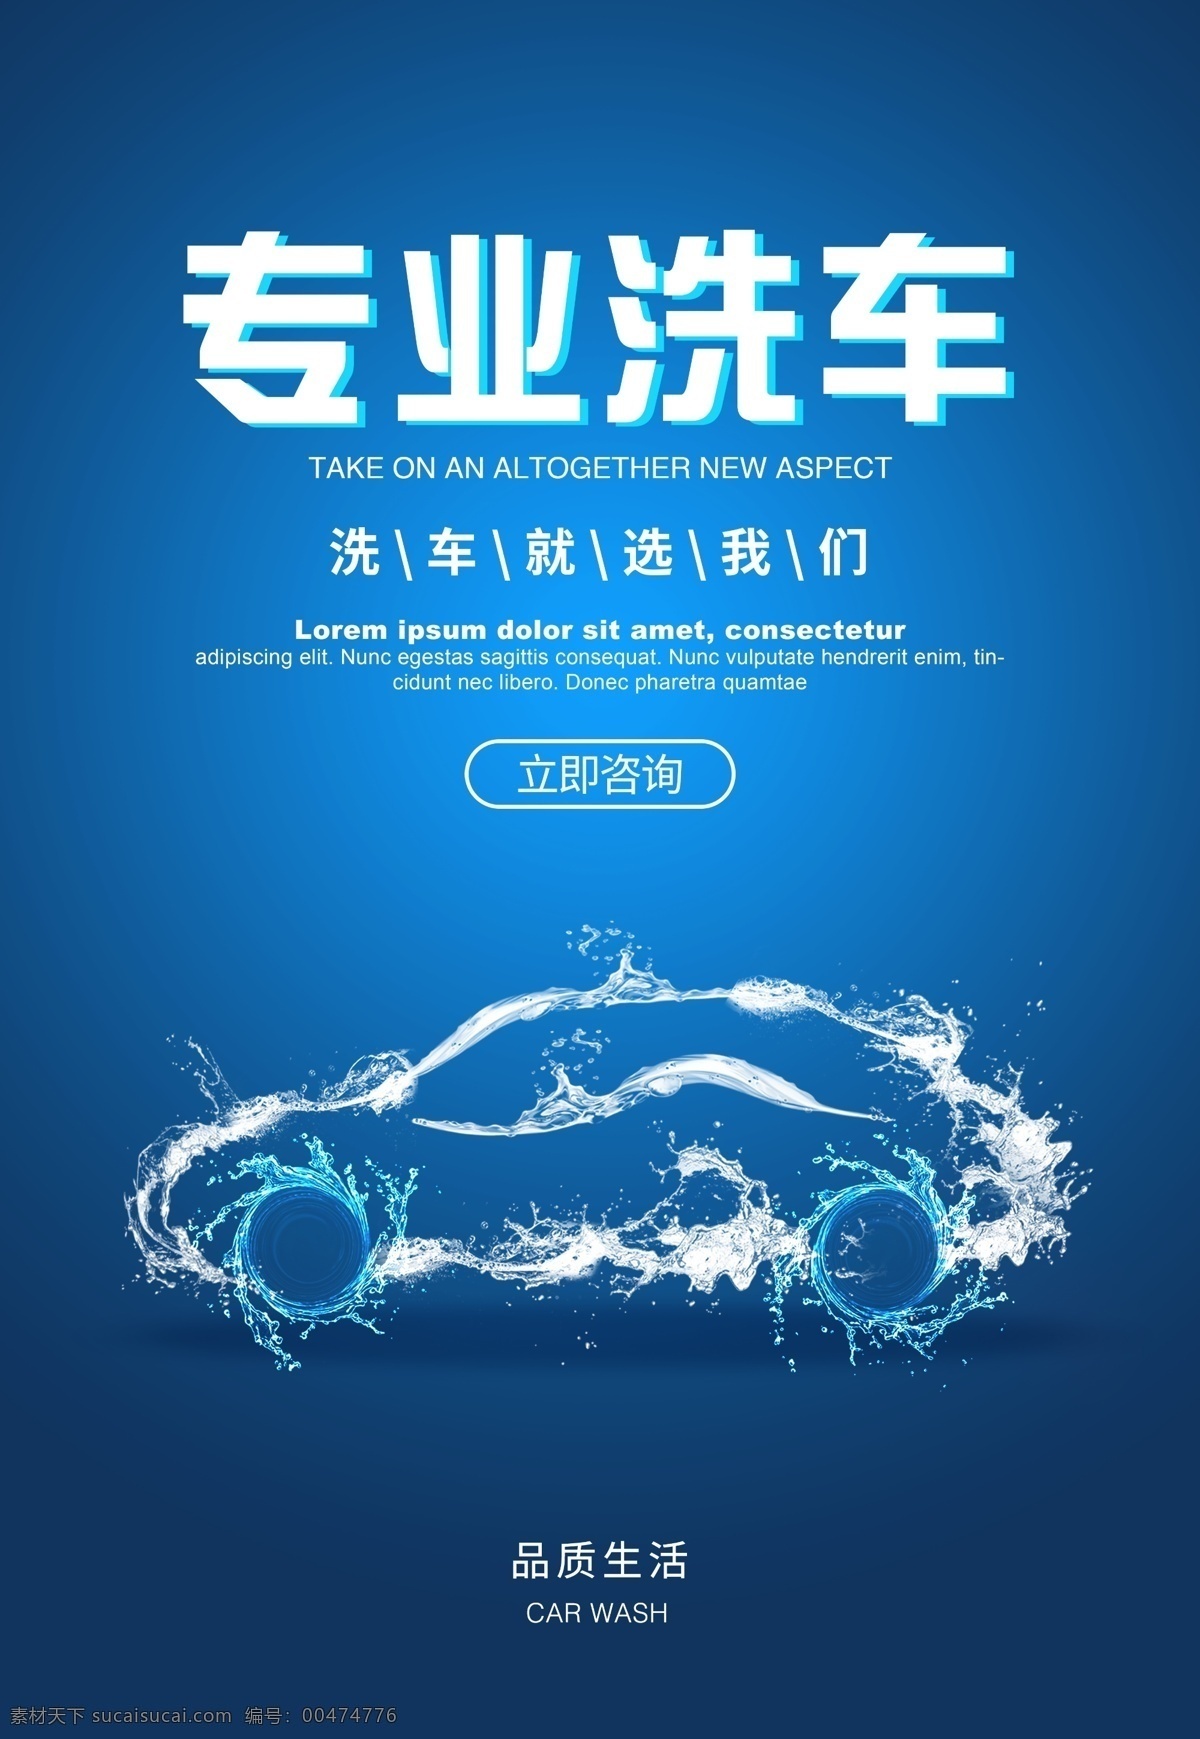 洗车海报 海报 洗车 汽车 蓝色 卡通 简约 商务 商业 广告宣传